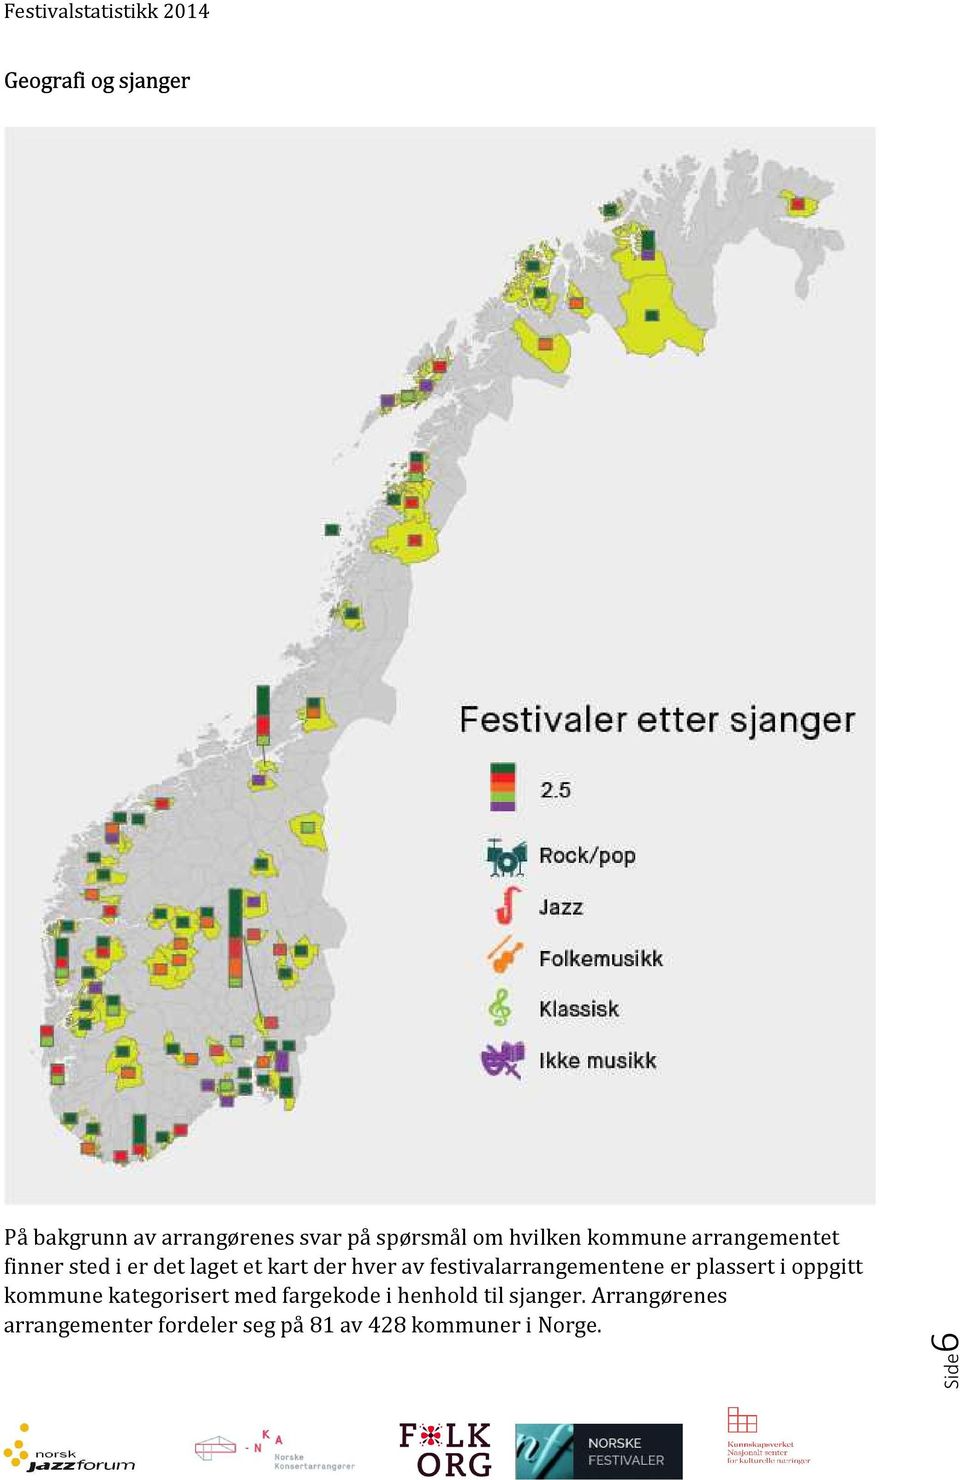 festivalarrangementene er plassert i oppgitt kommune kategorisert med fargekode